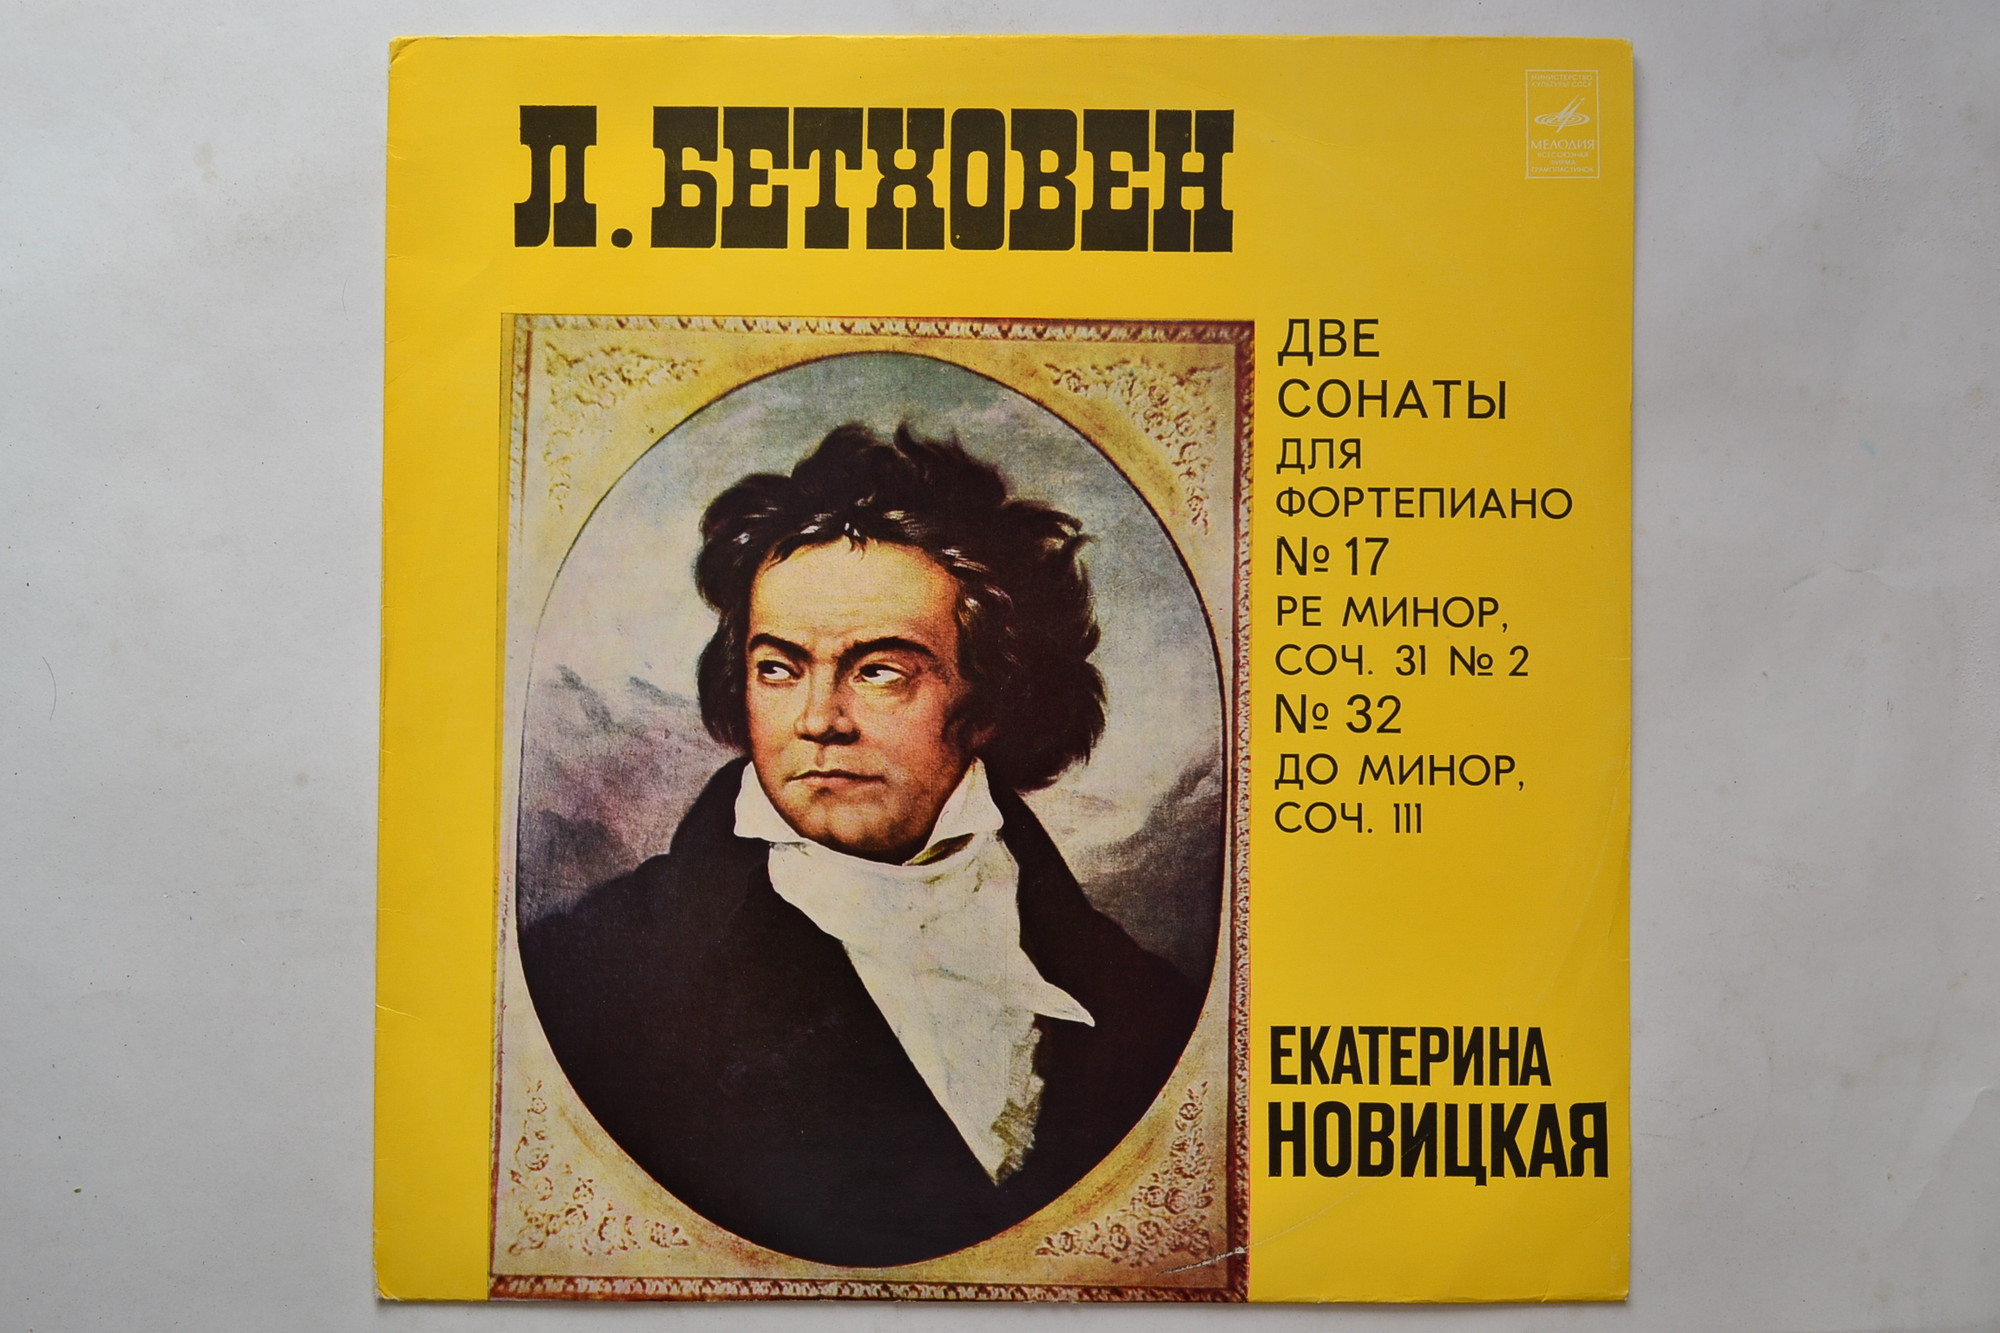 Л. БЕТХОВЕН (1770-1827): Сонаты для ф-но № 17, № 32 (Екатерина   Новицкая)